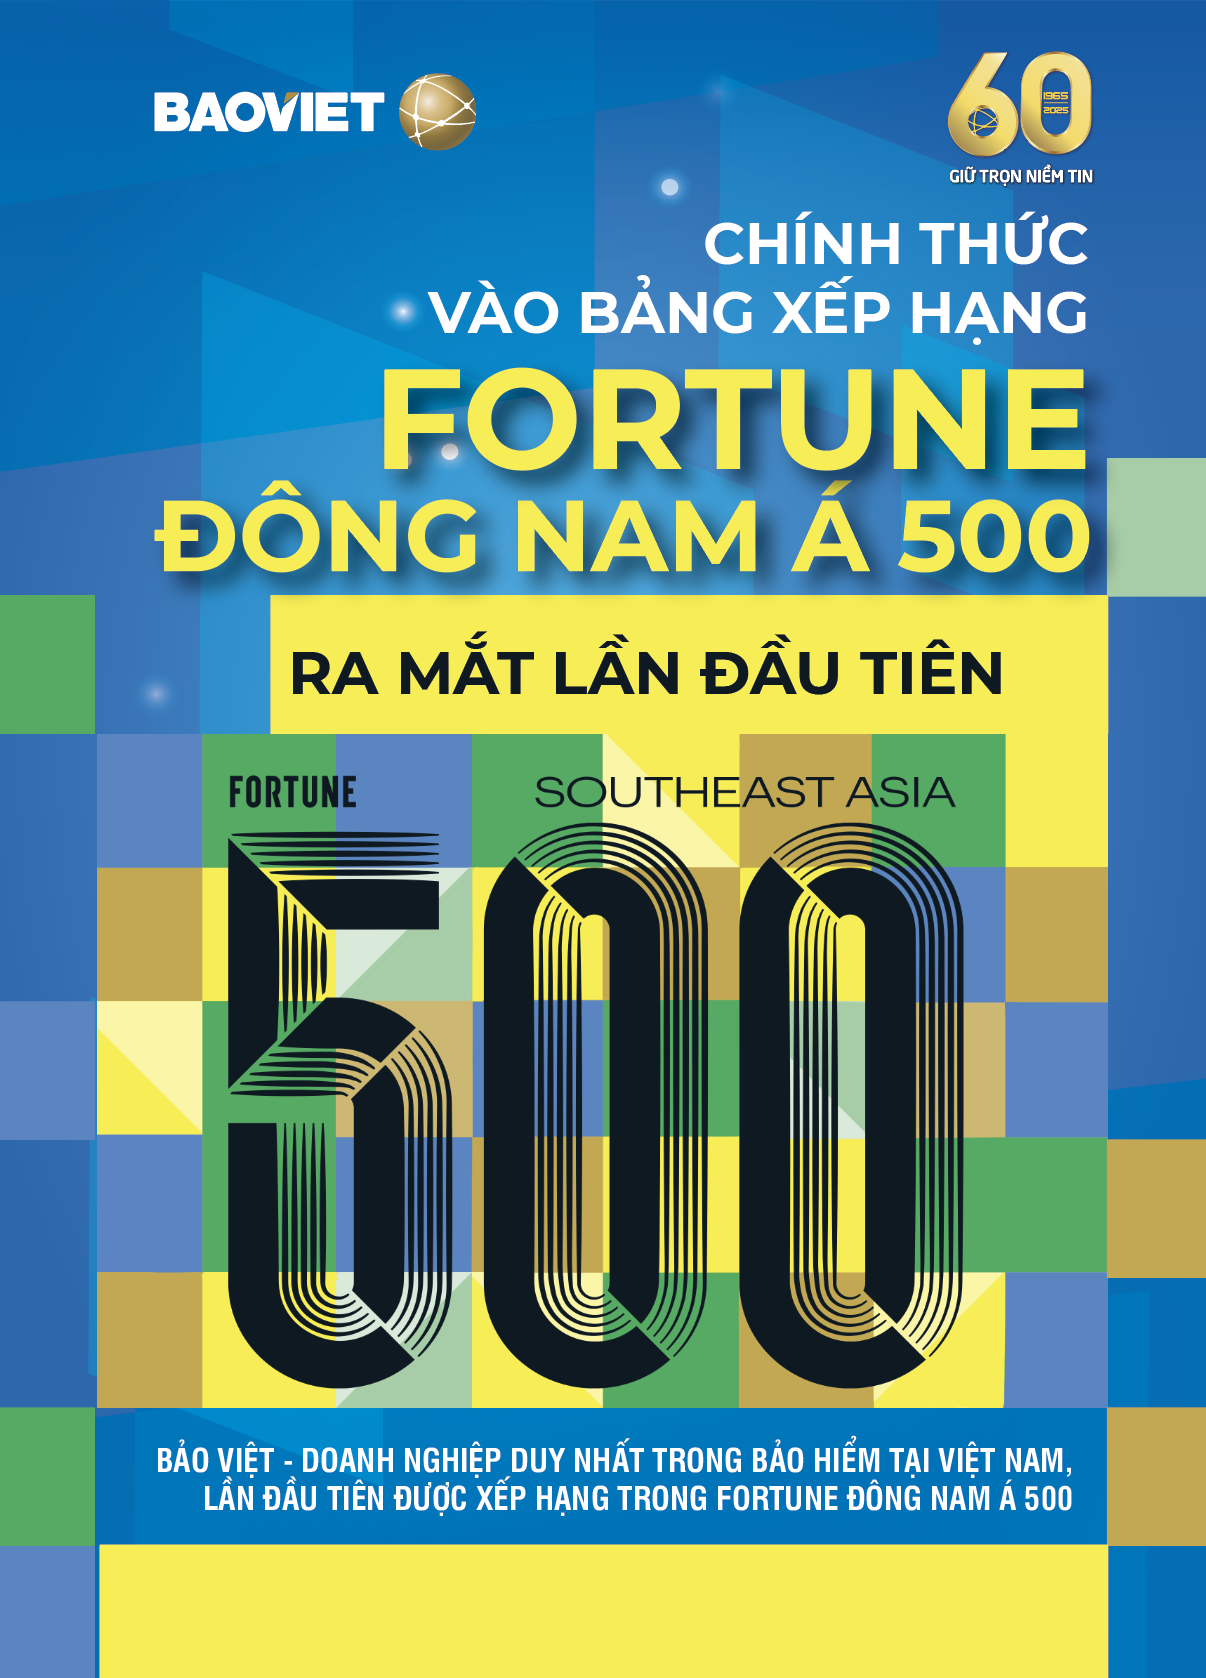 Tập đoàn Bảo Việt (BVH) được xếp hạng trong Fortune Đông Nam Á 500